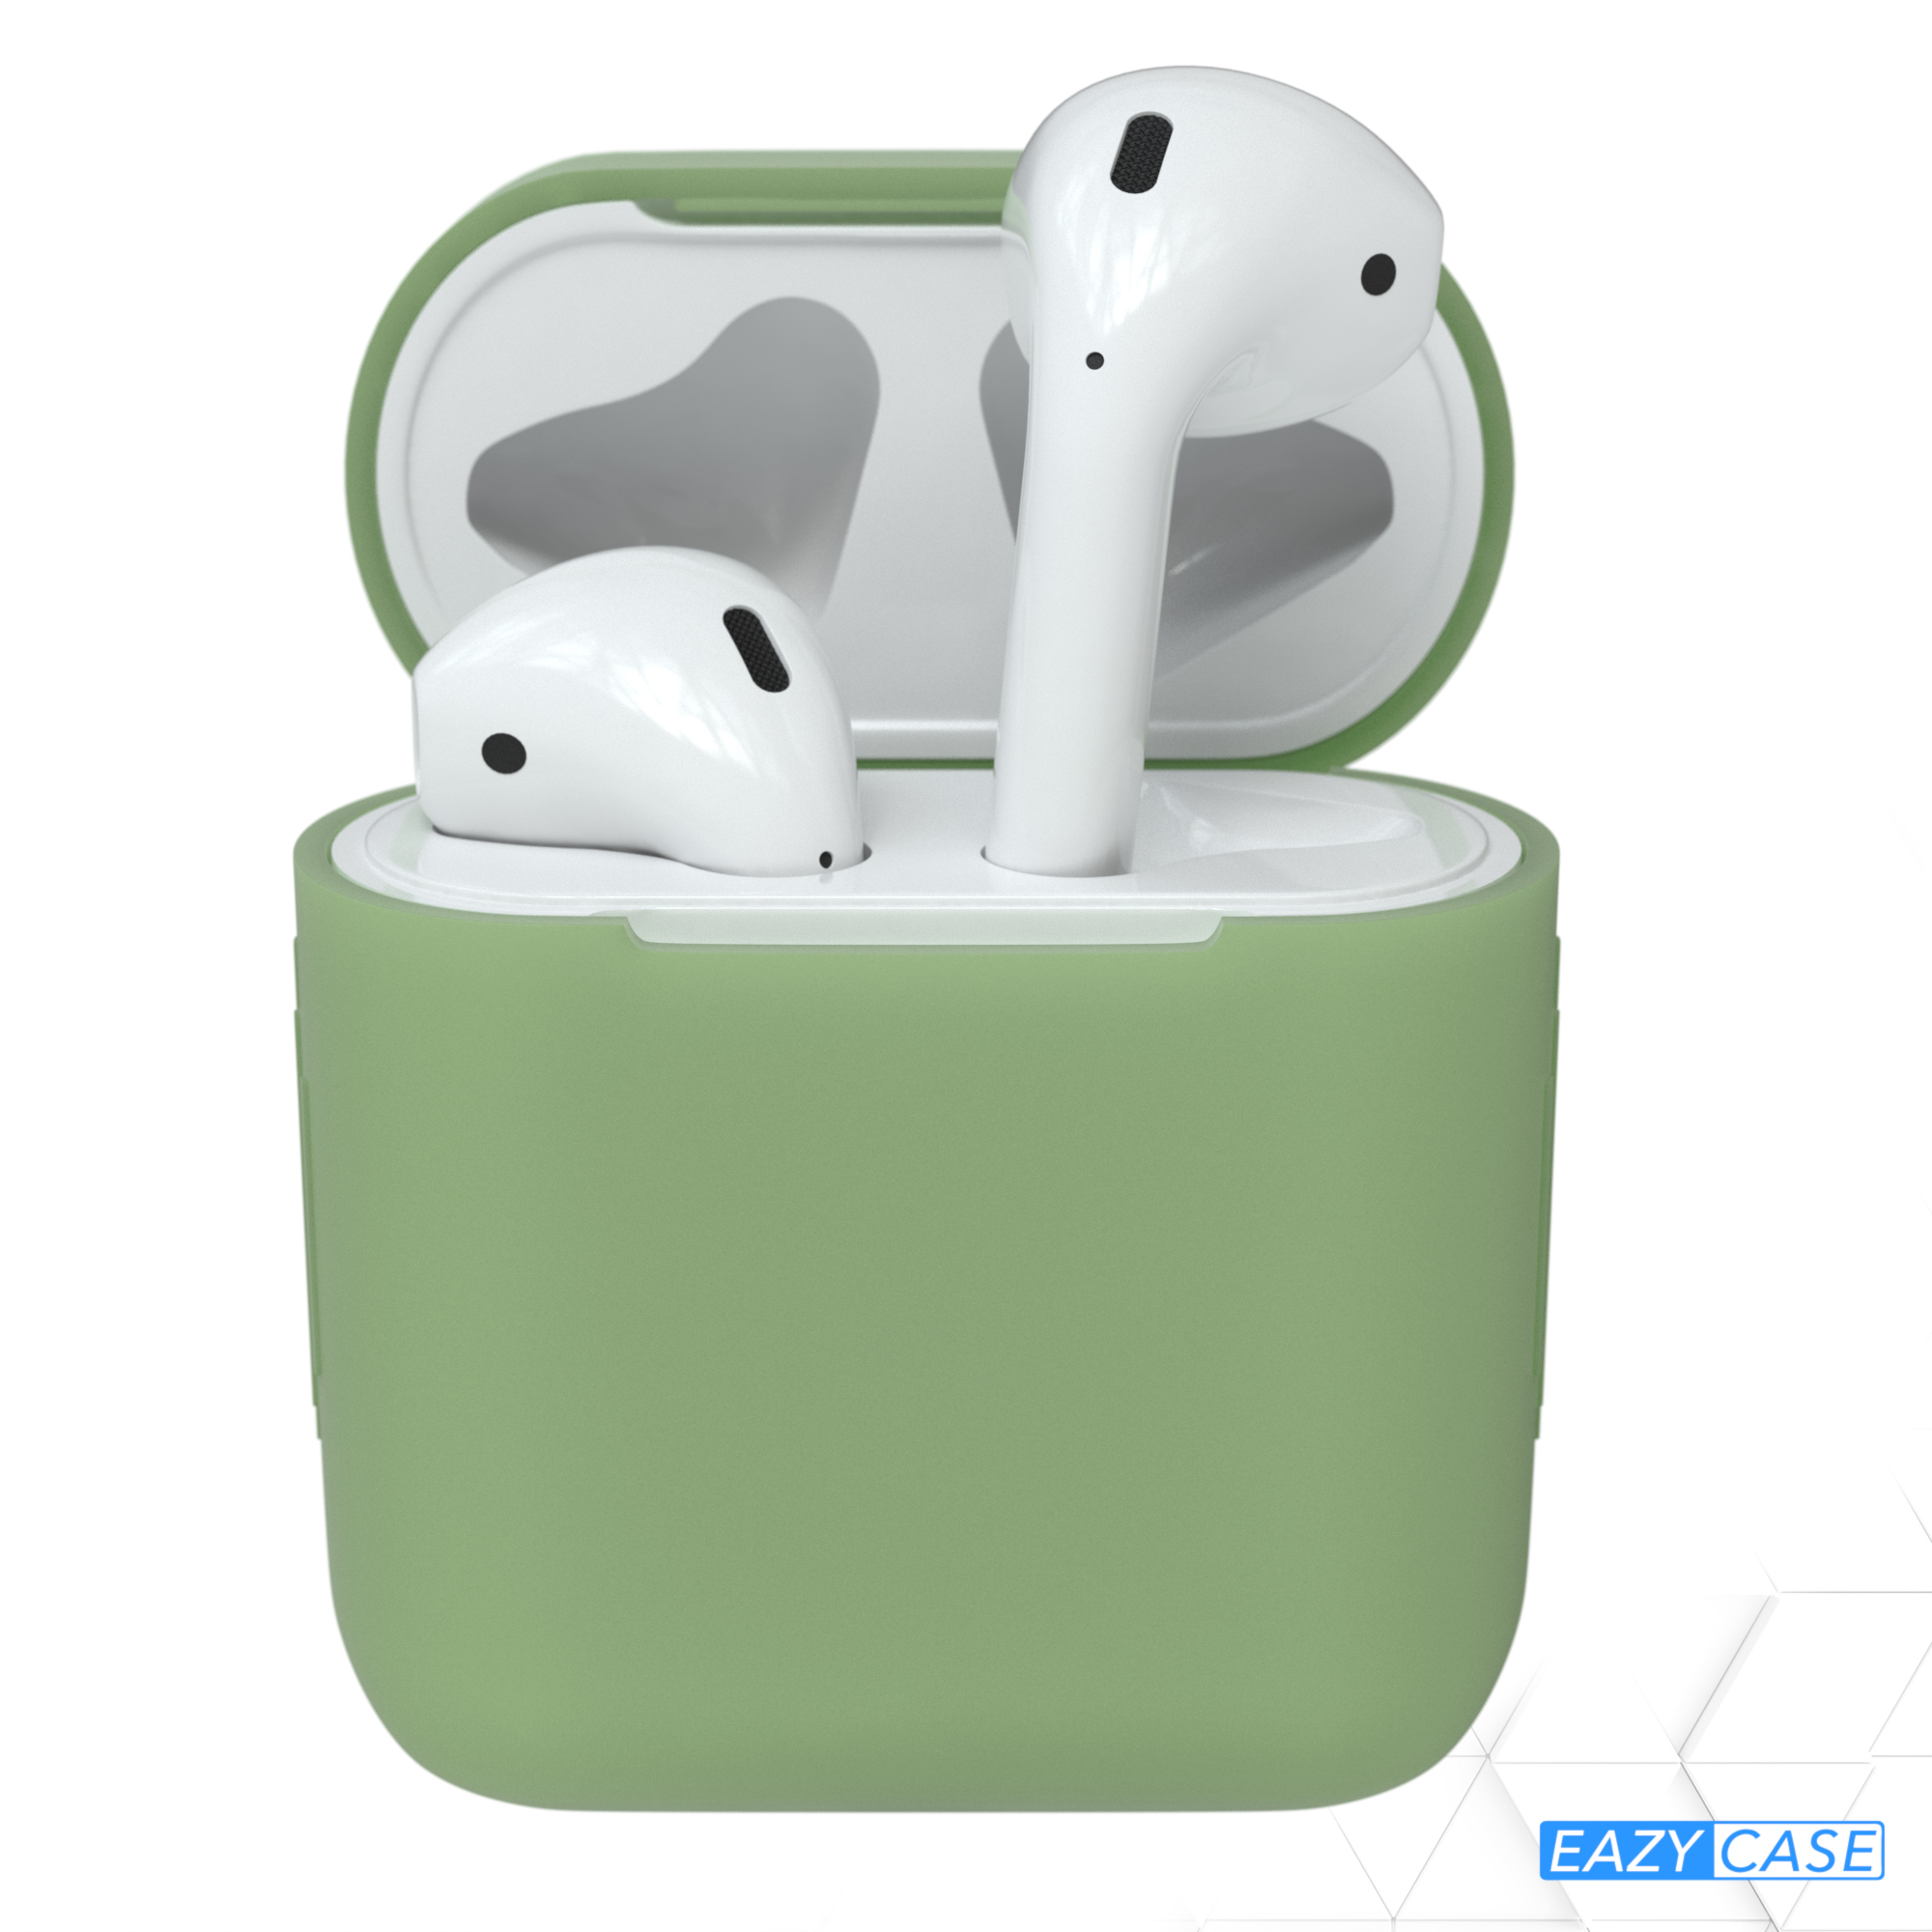 Olive für: passend Schutzhülle Sleeve Silikon Apple CASE AirPods Case Grün EAZY